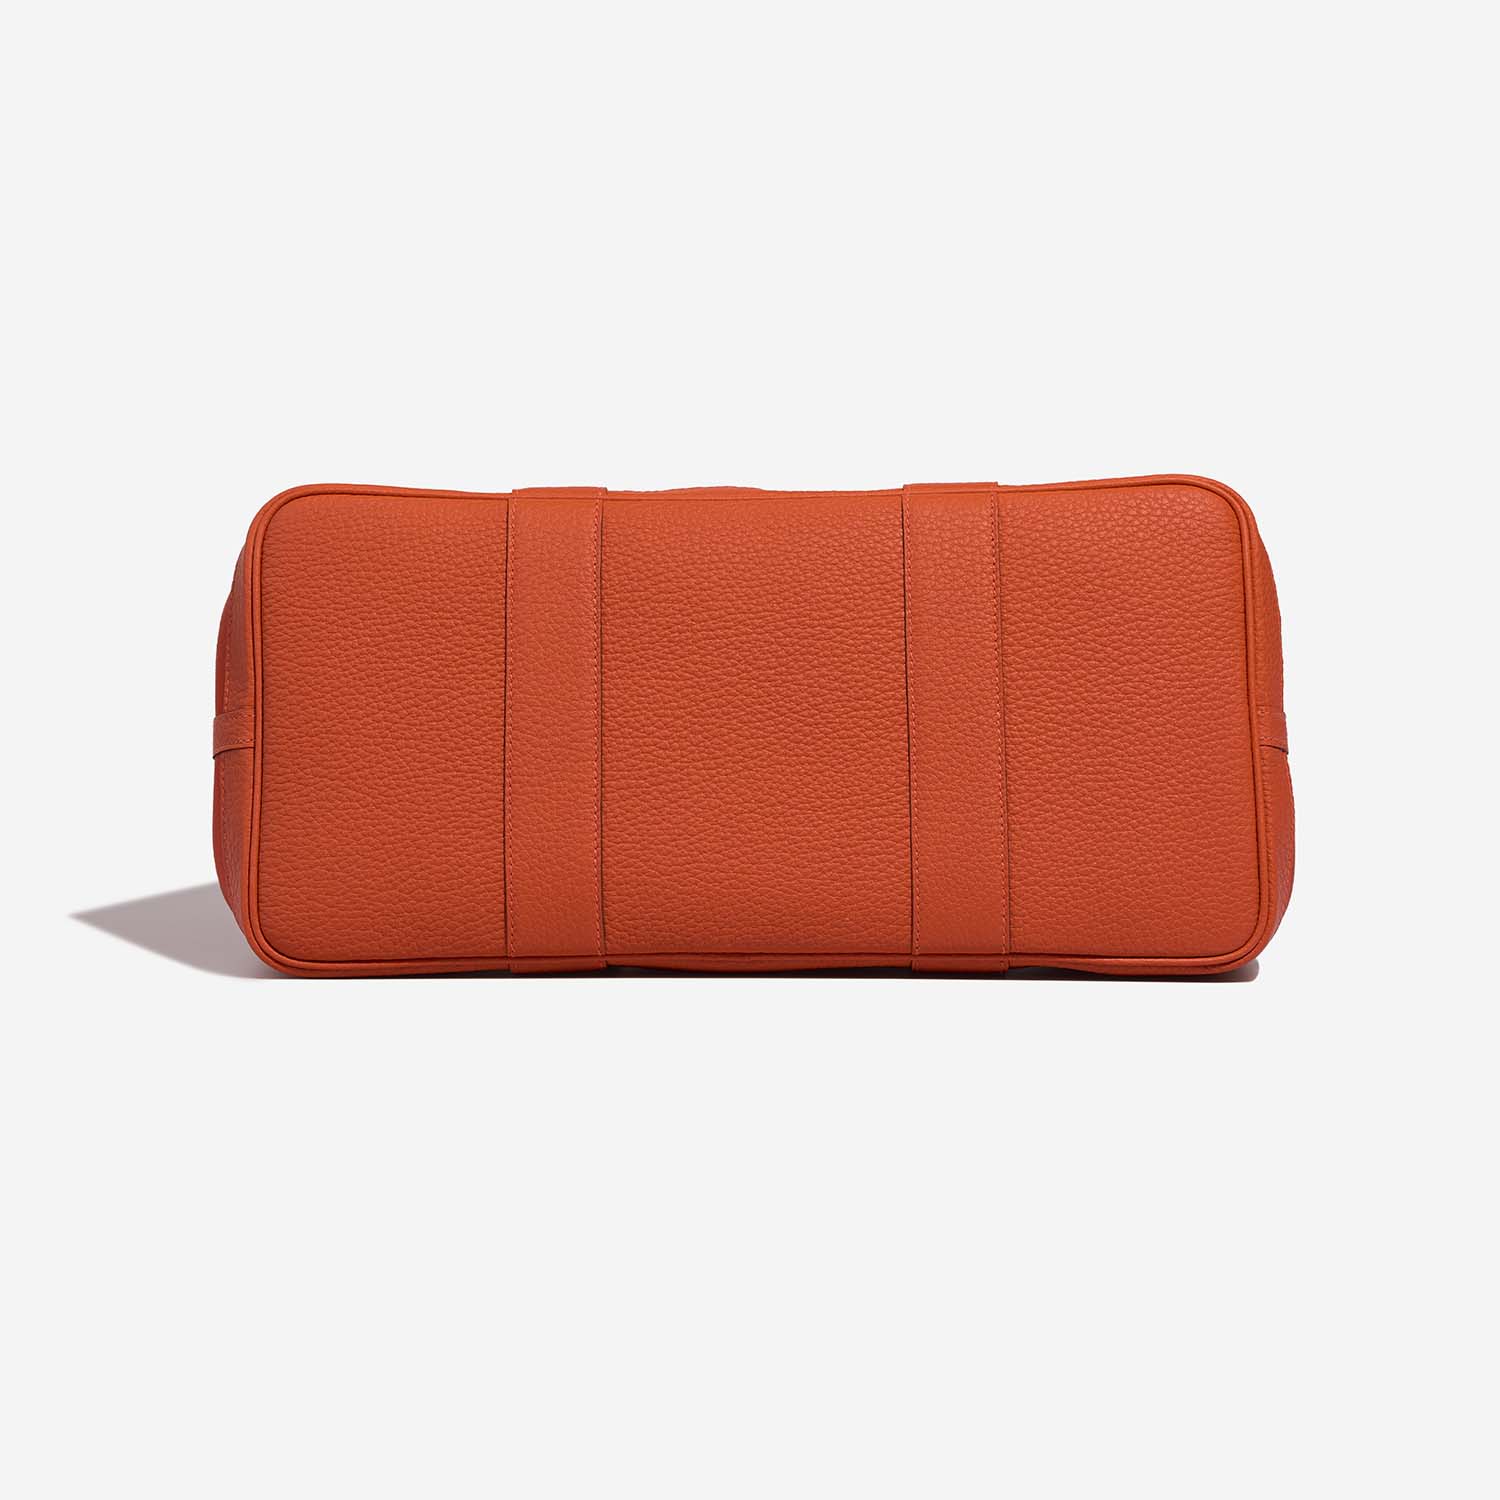 Hermès GardenParty 36 OrangePoppy-Capucine Bottom | Verkaufen Sie Ihre Designer-Tasche auf Saclab.com